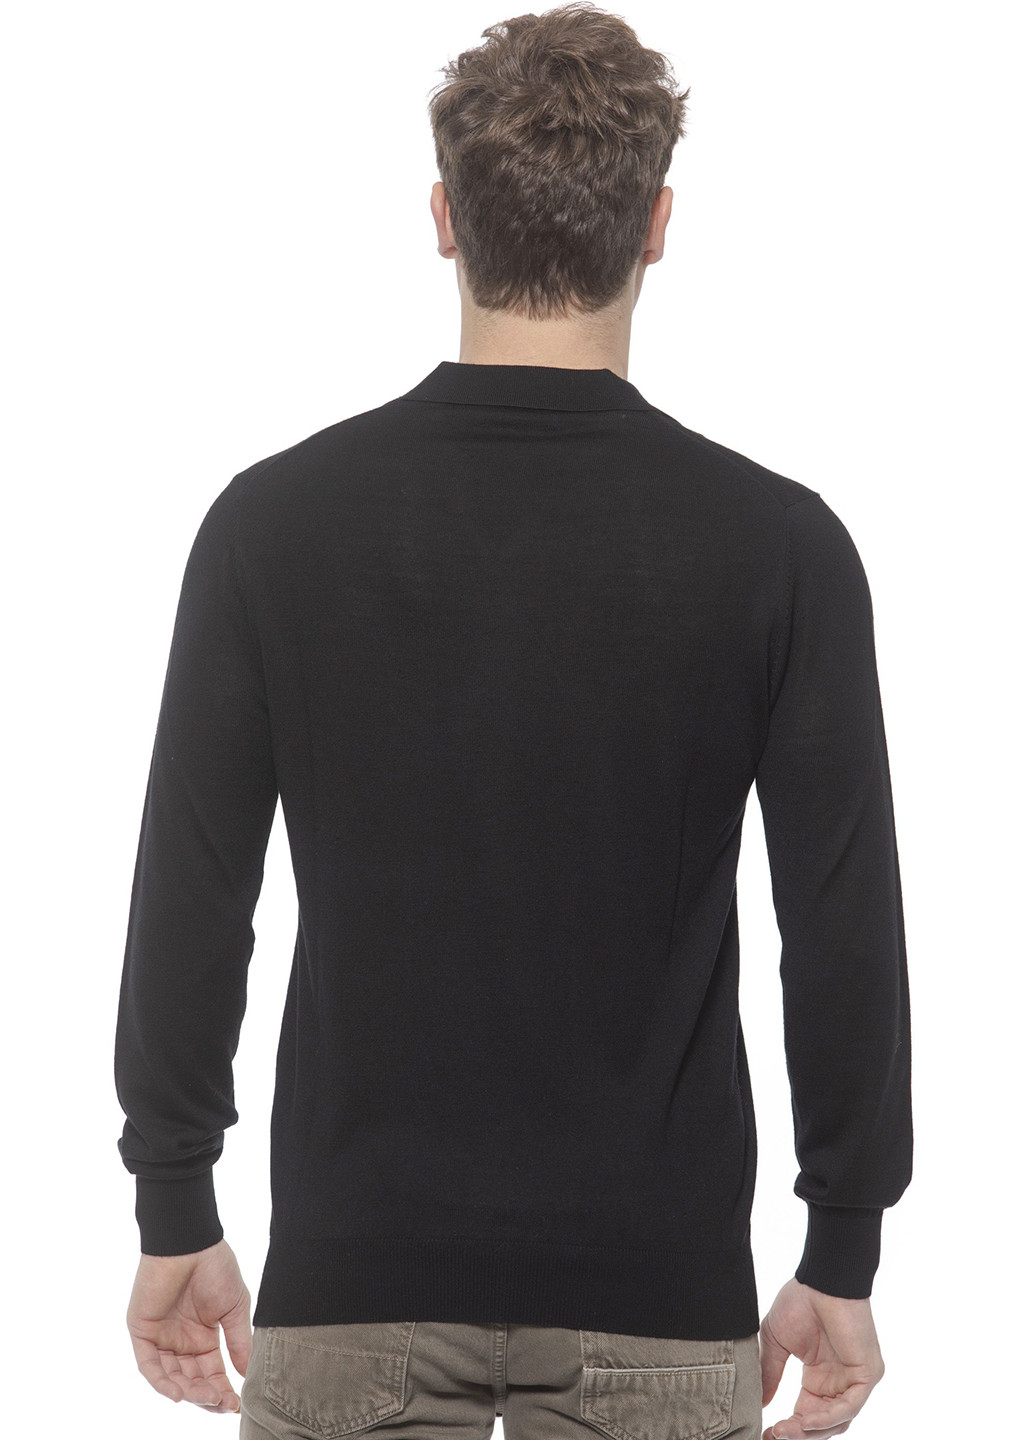 Черный демисезонный пуловер пуловер Pierre Balmain